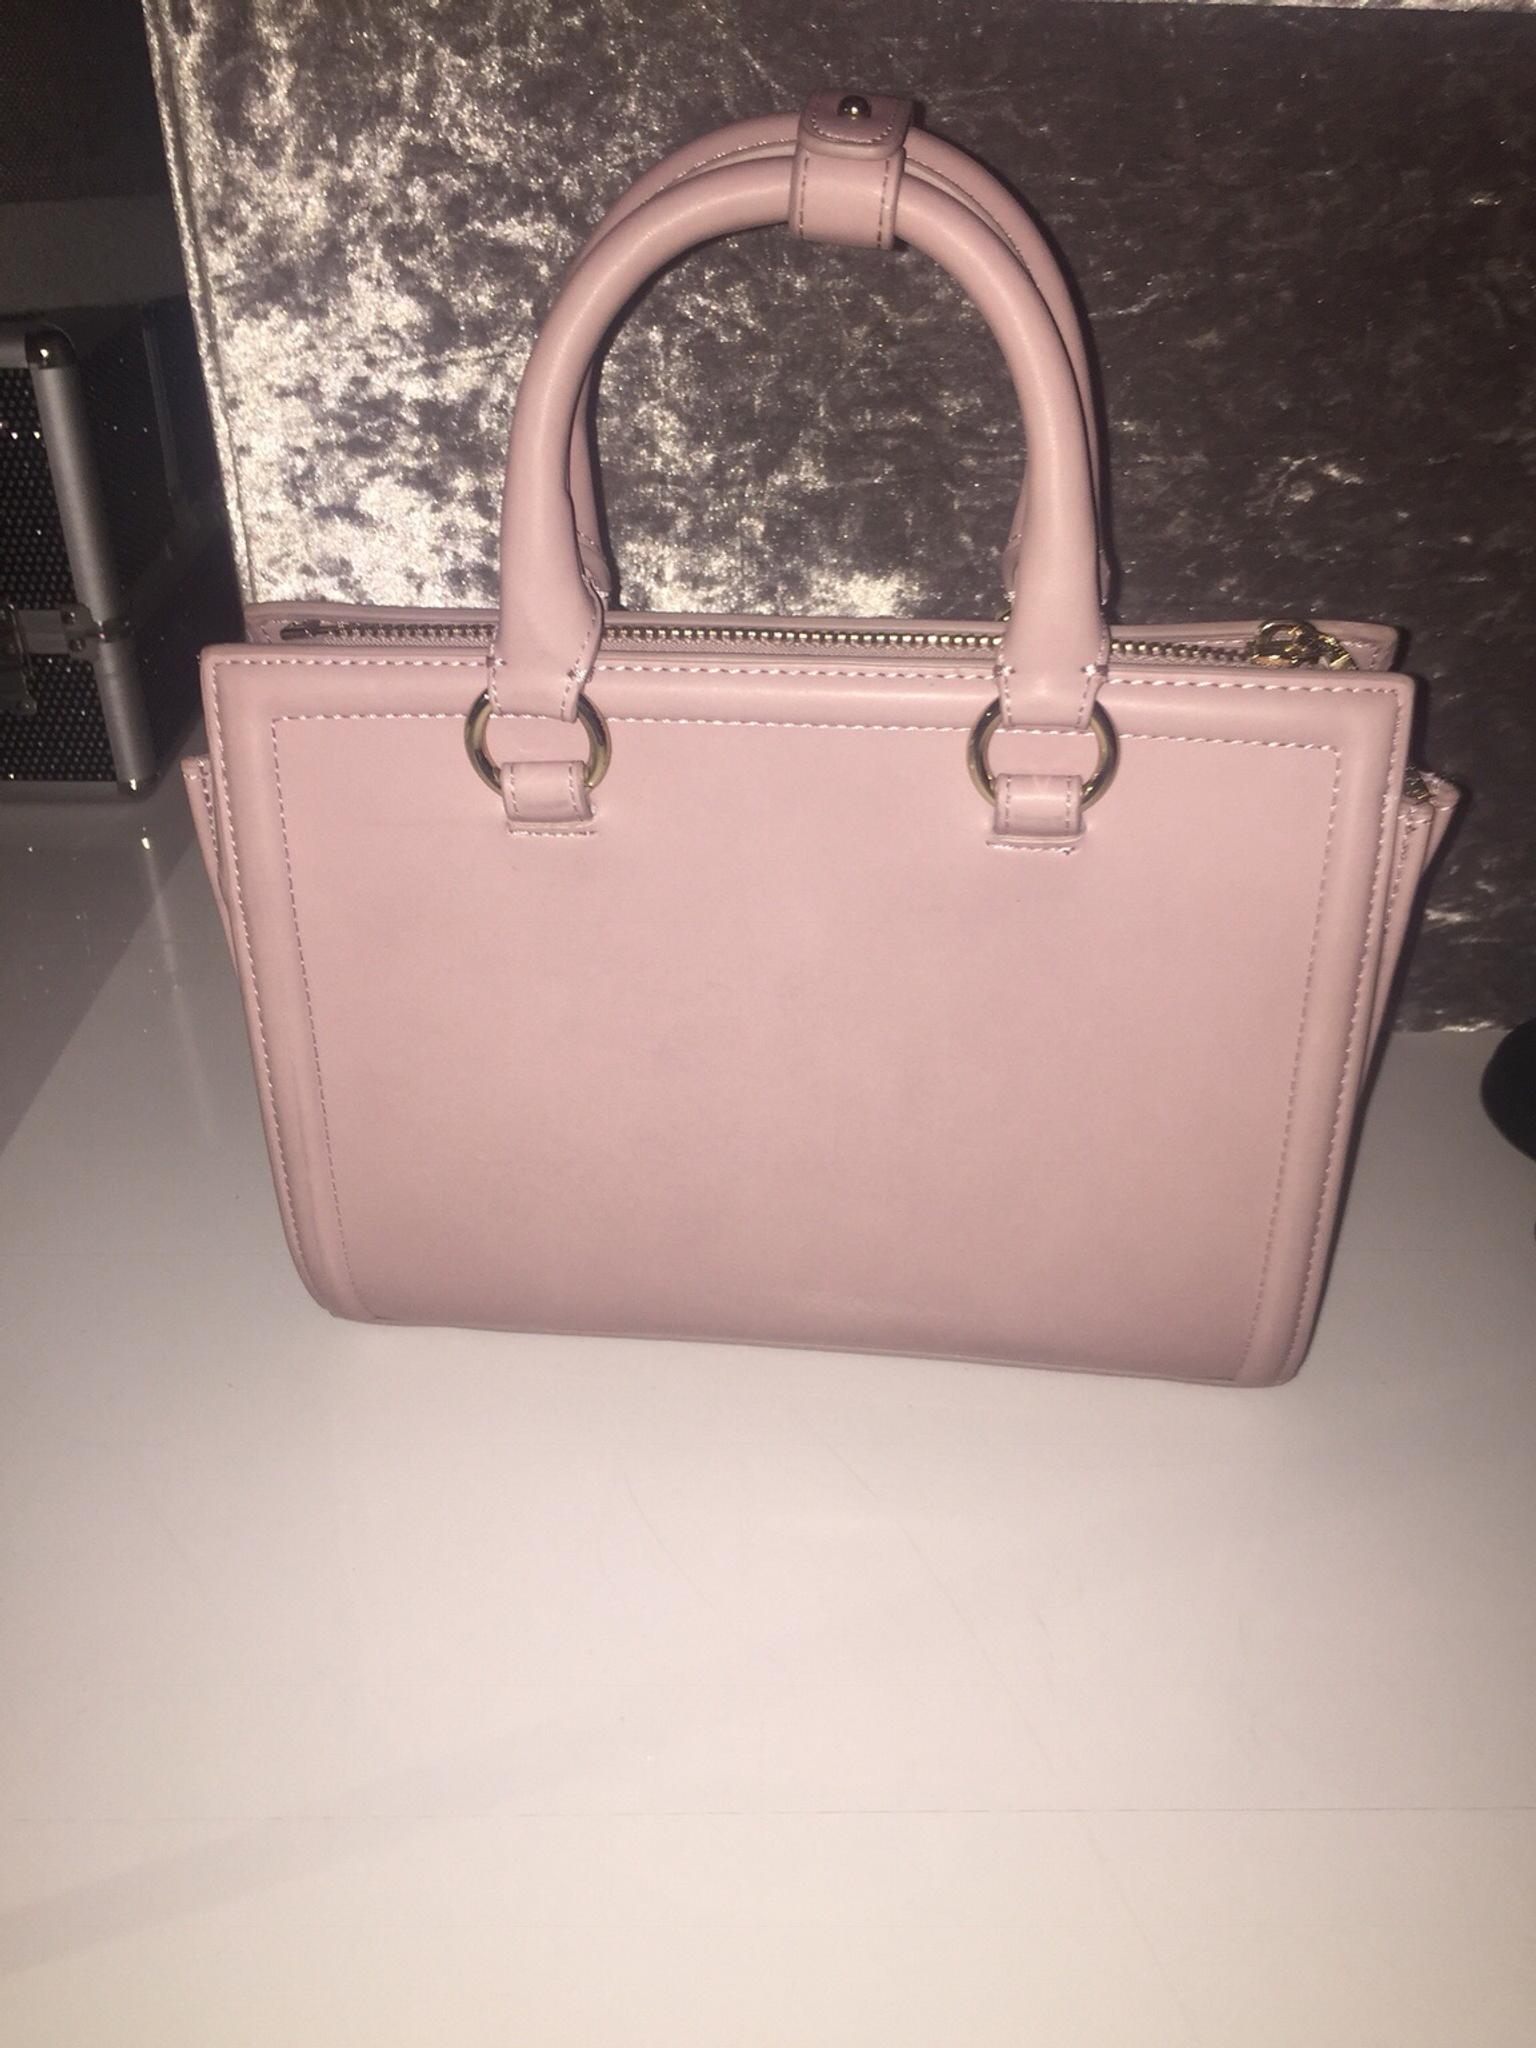 zara pink handbag